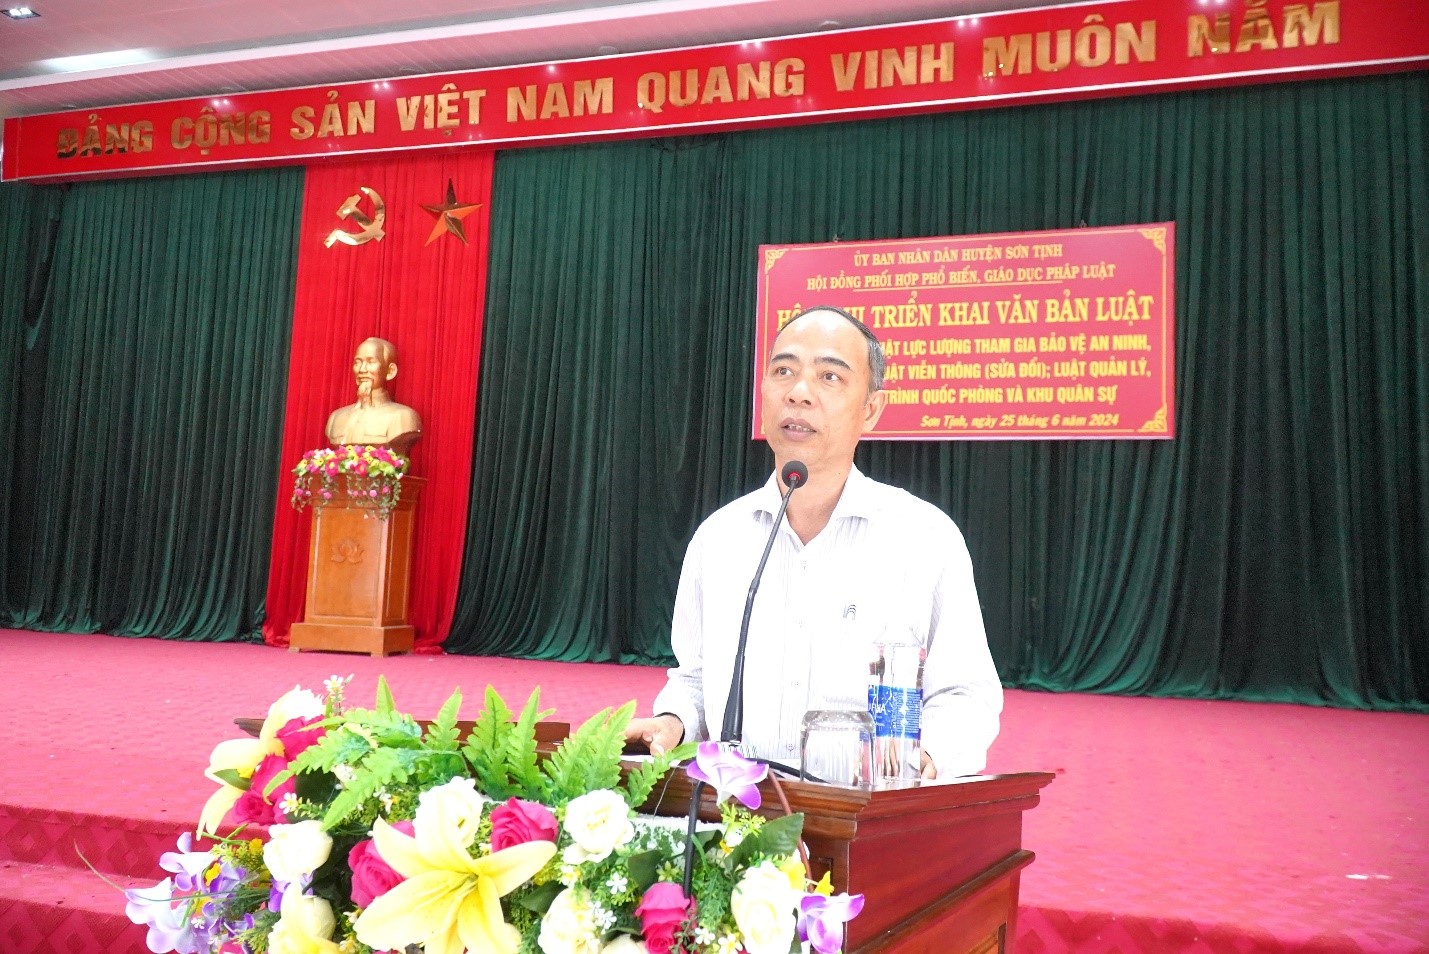 Sơn Tịnh tổ chức Hội nghị triển khai văn bản luật đợt 1 năm 2024